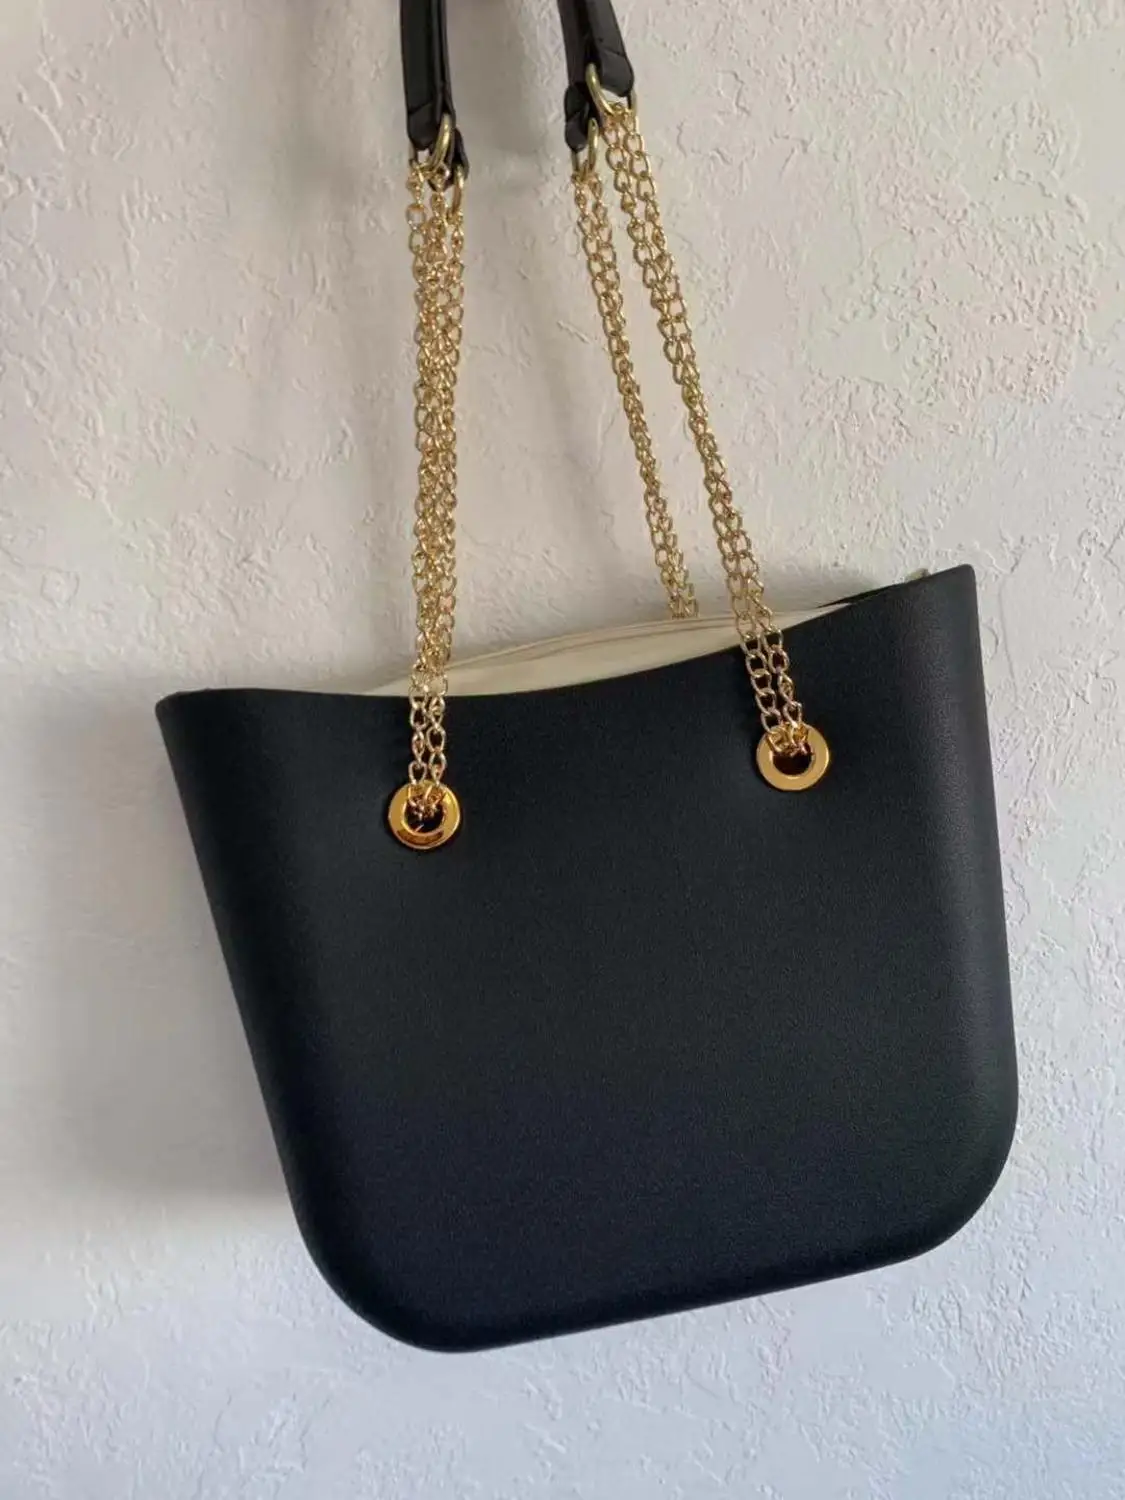 MLHJ новая obag сумка мини размера модная женская obag - Цвет: Золотой